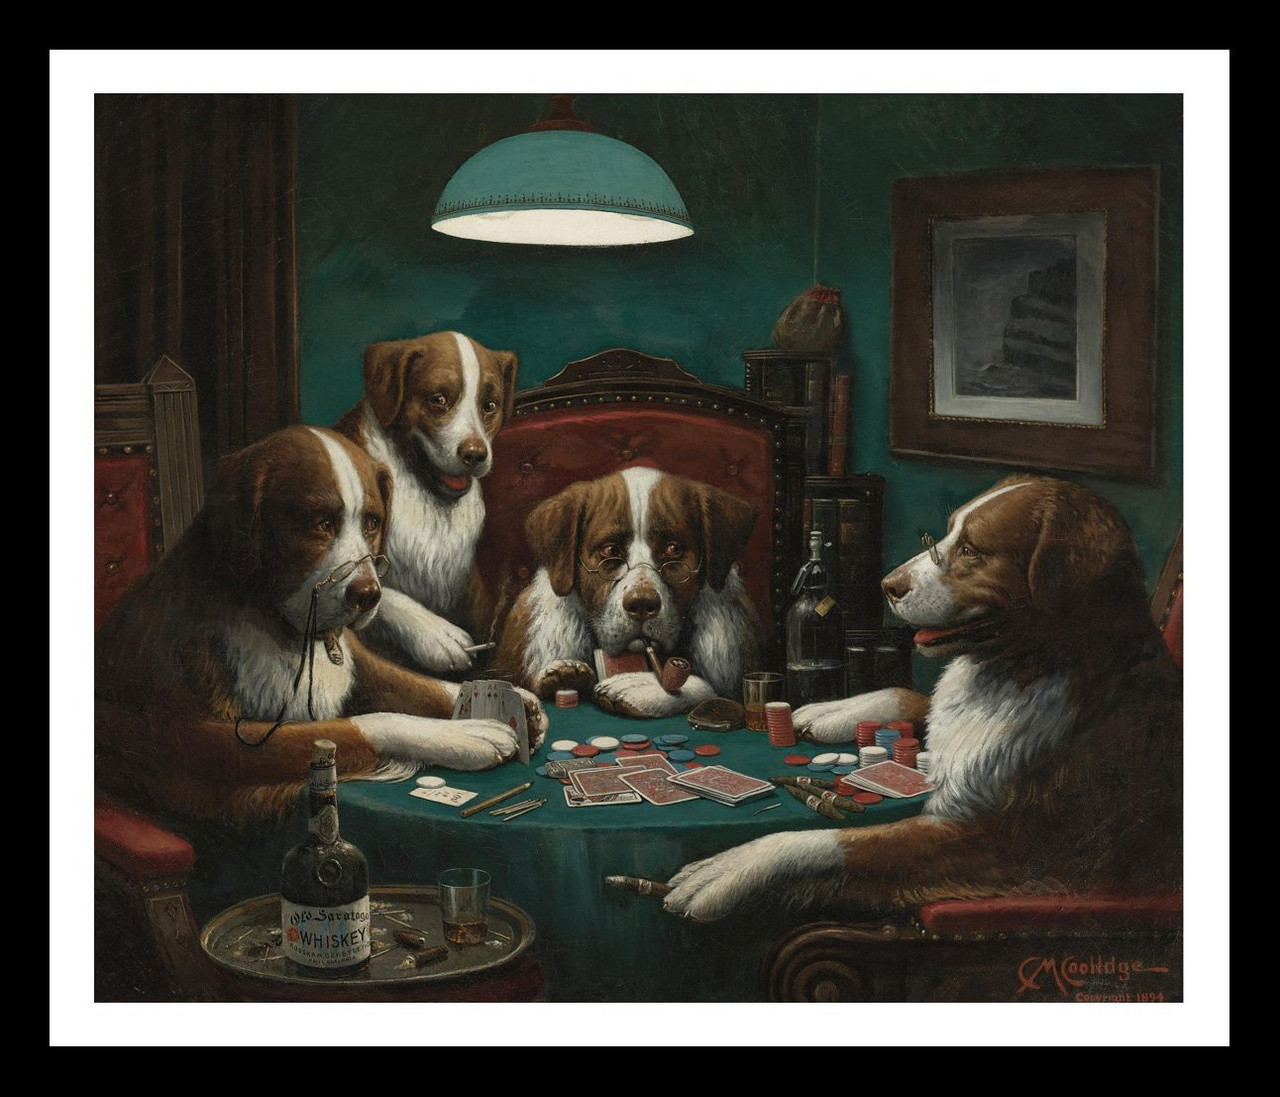 Собаки играют в покер кулидж. Кассиус Маркеллус Кулидж. Кассиус Кулидж картины. Кассиус Маркеллус Кулидж собаки играют в Покер. Собаки играют в Покер картина.